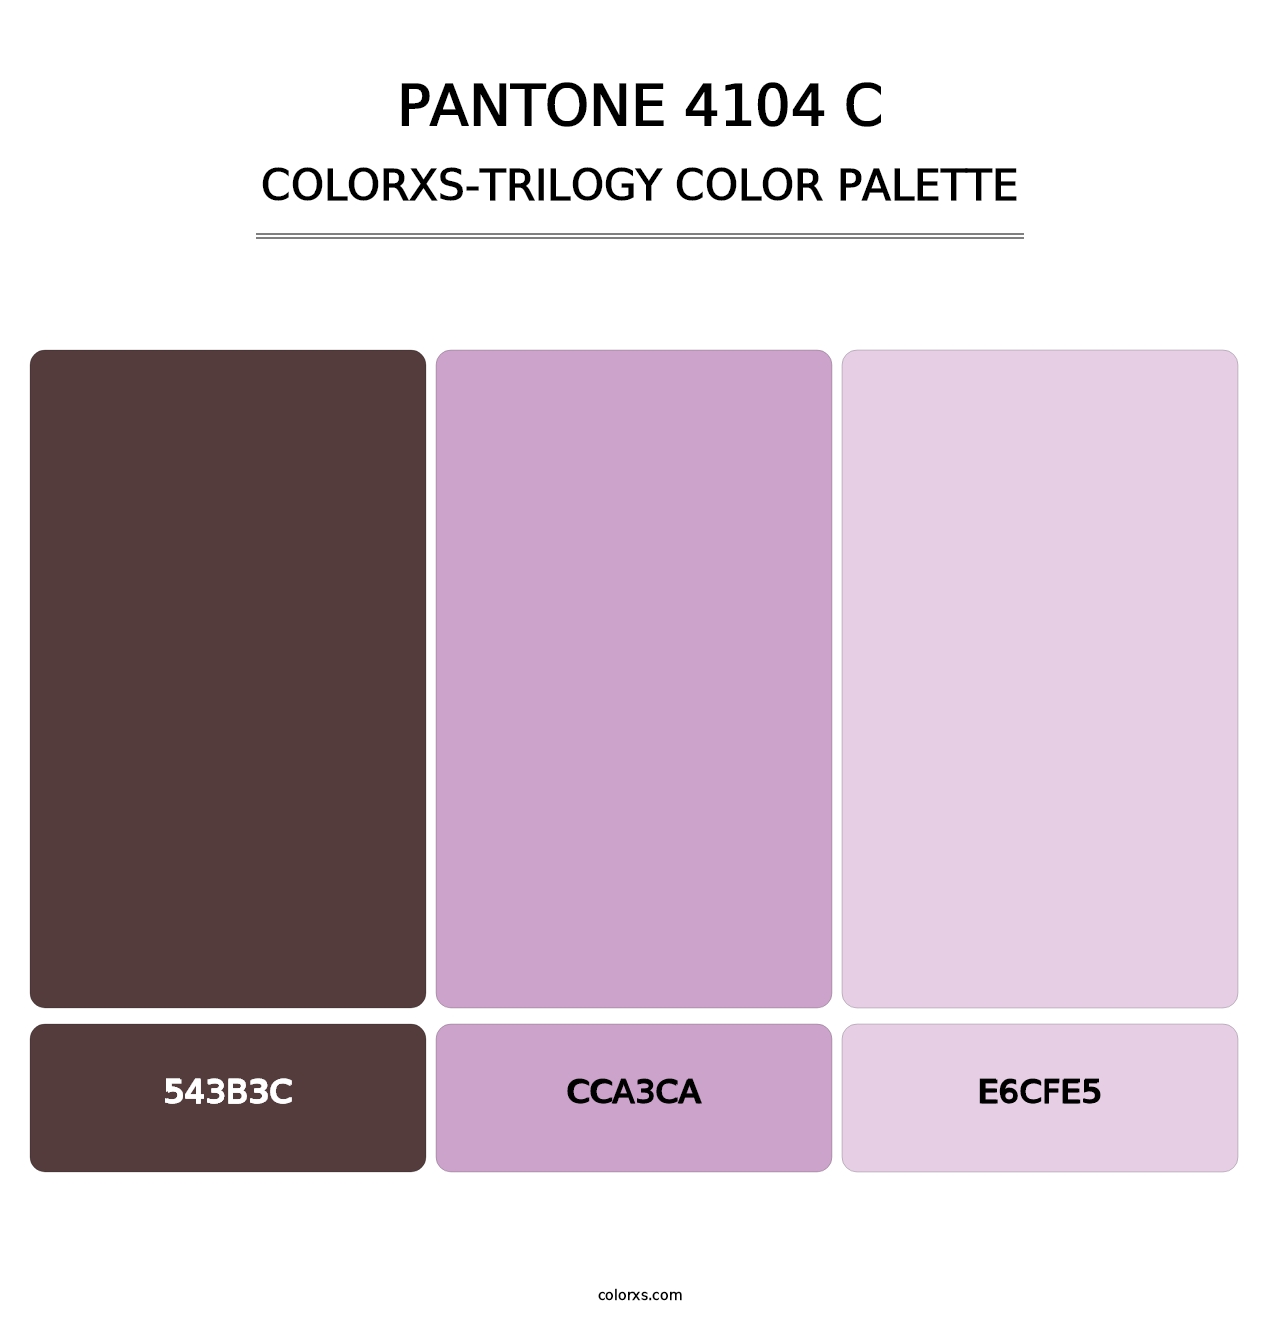 PANTONE 4104 C - Colorxs Trilogy Palette